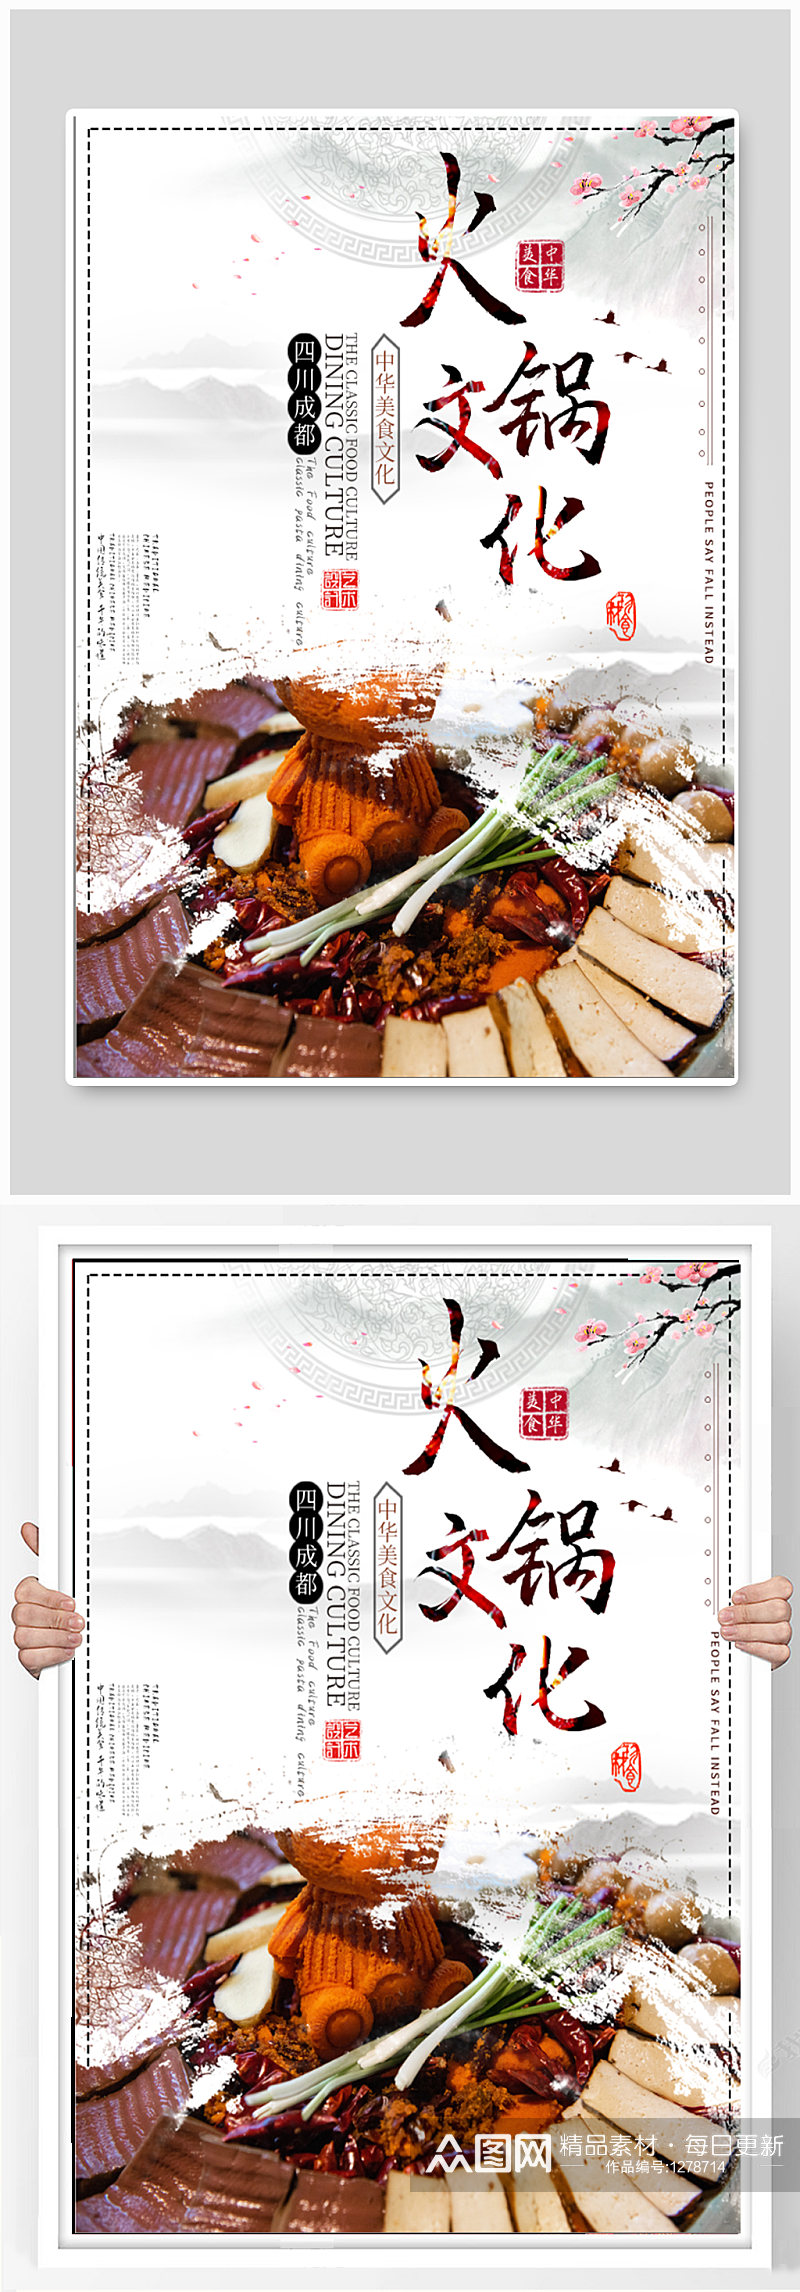 火锅文化美食海报素材